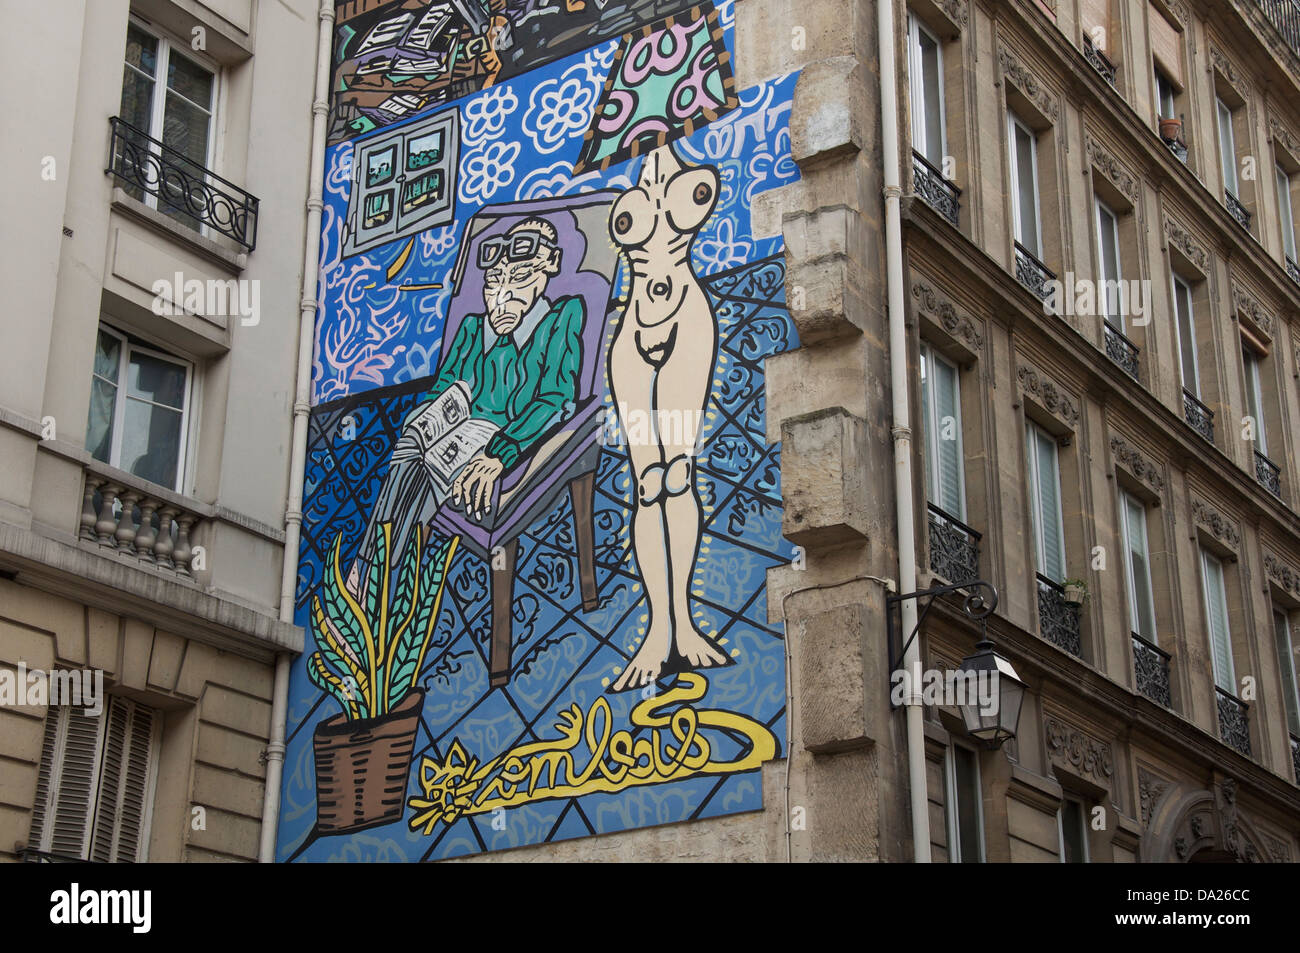 Parisian street art. La femme, la lumière de l’homme, Woman is the light of the man. A Mural by Robert Combas, in the Marais district of Paris. France. Stock Photo